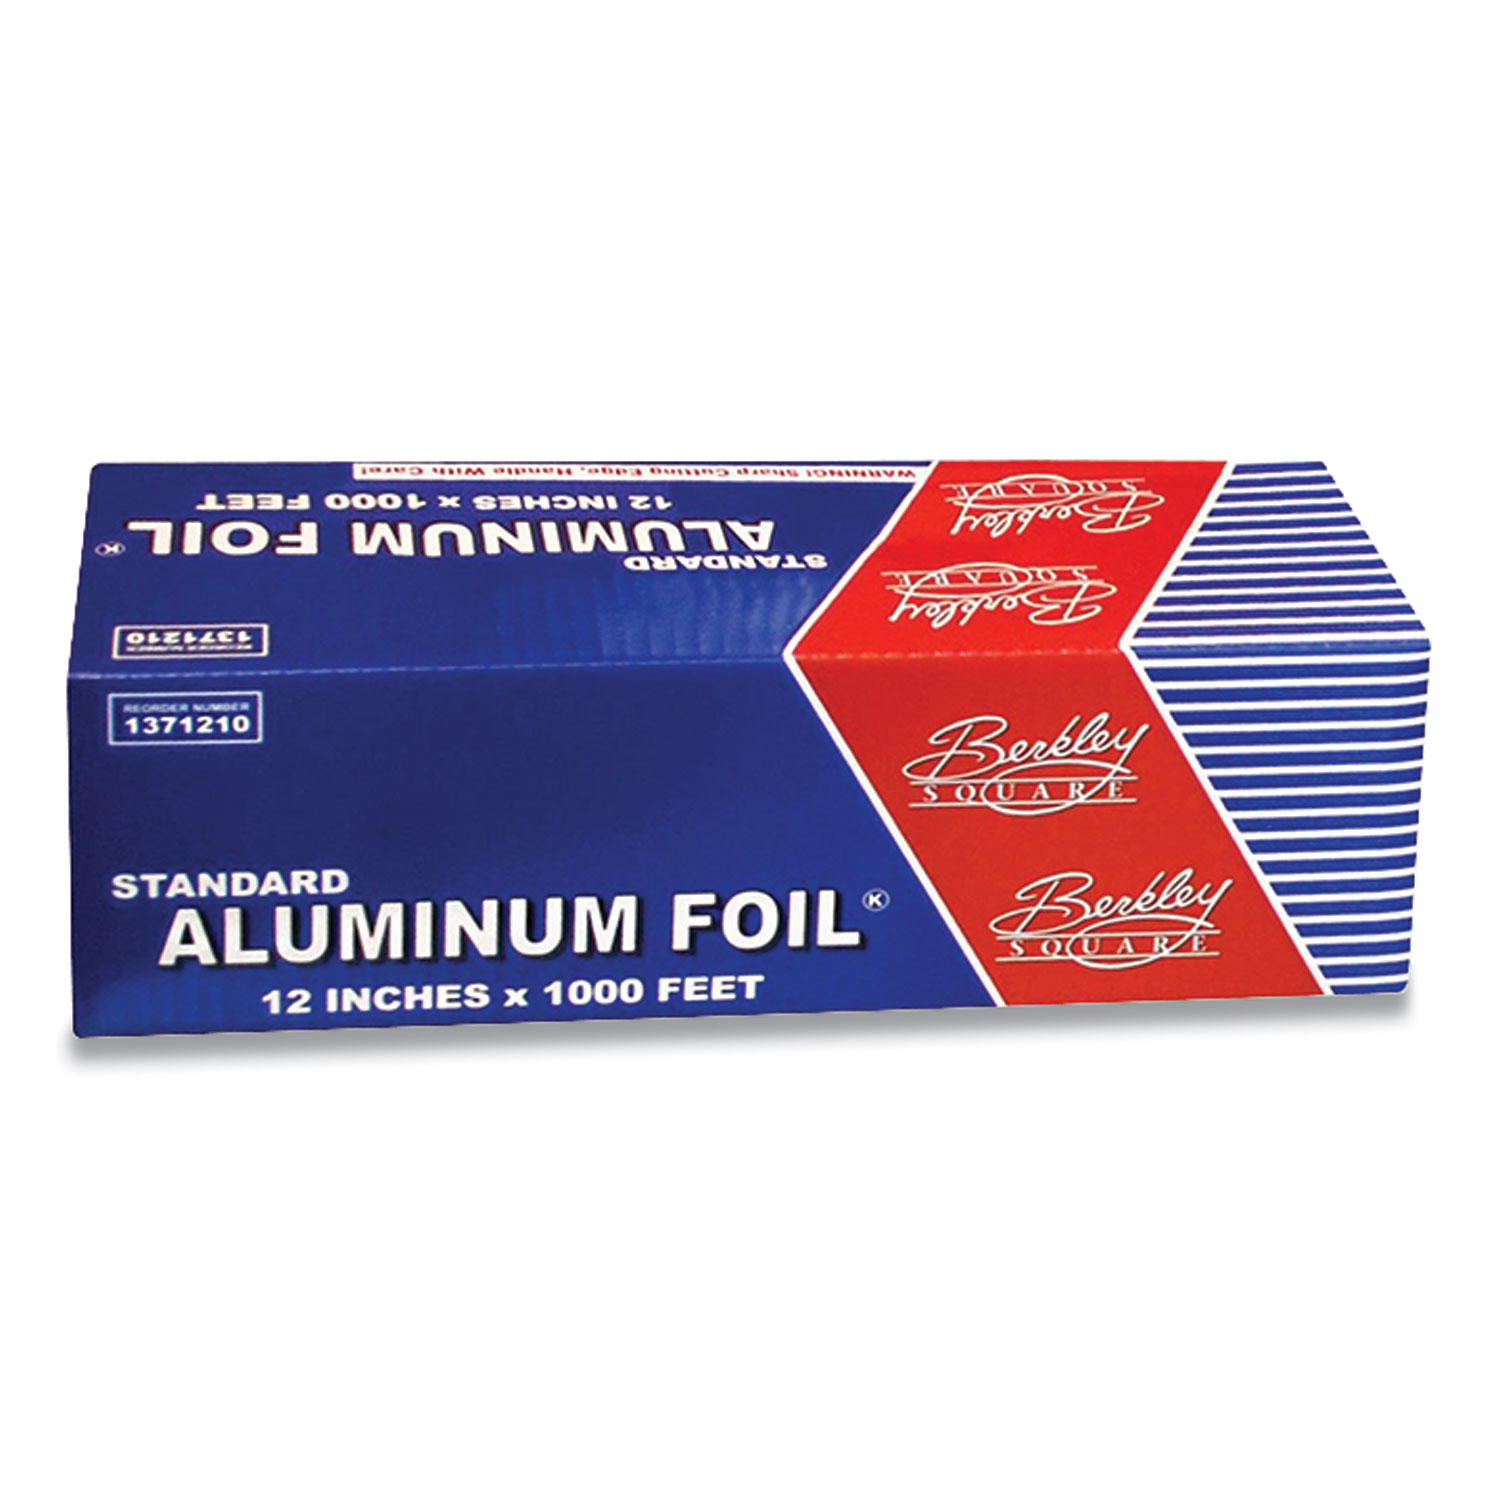  Berkley Square 1371210 Standard Aluminum Foil Roll, 12 x 1,000 ft (BSQ2549291) 